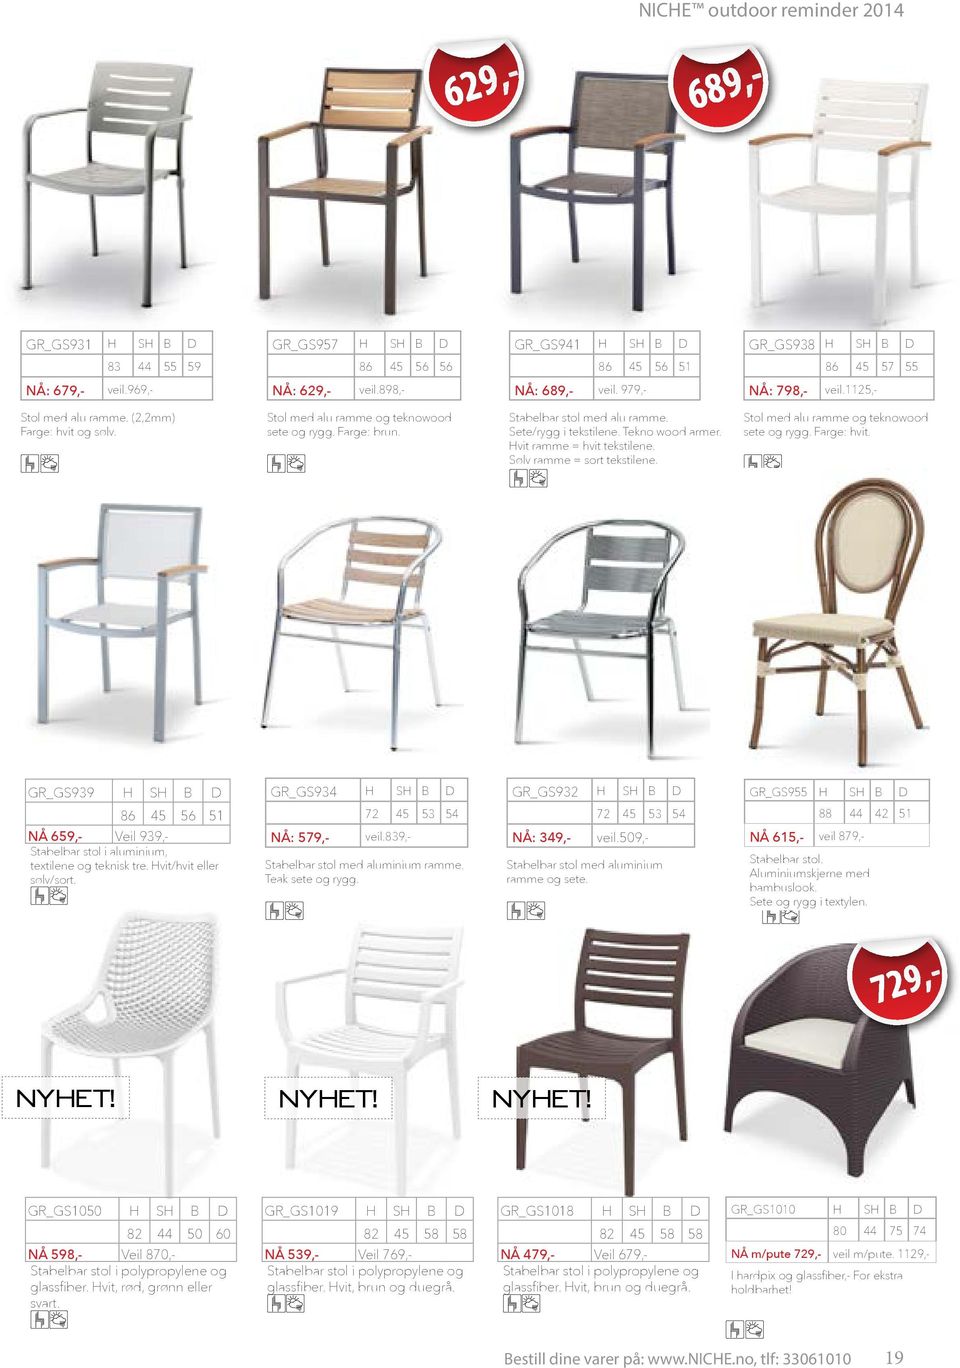 B D GR_GS934 72 56 51 Stabelbar stol i aluminium, textilene og teknisk tre. Hvit/hvit eller sølv/sort. H NÅ: 579,- SH B 45 689,- H SH B 86 45 GR_GS938 H D 56 51 NÅ: 798,- veil.